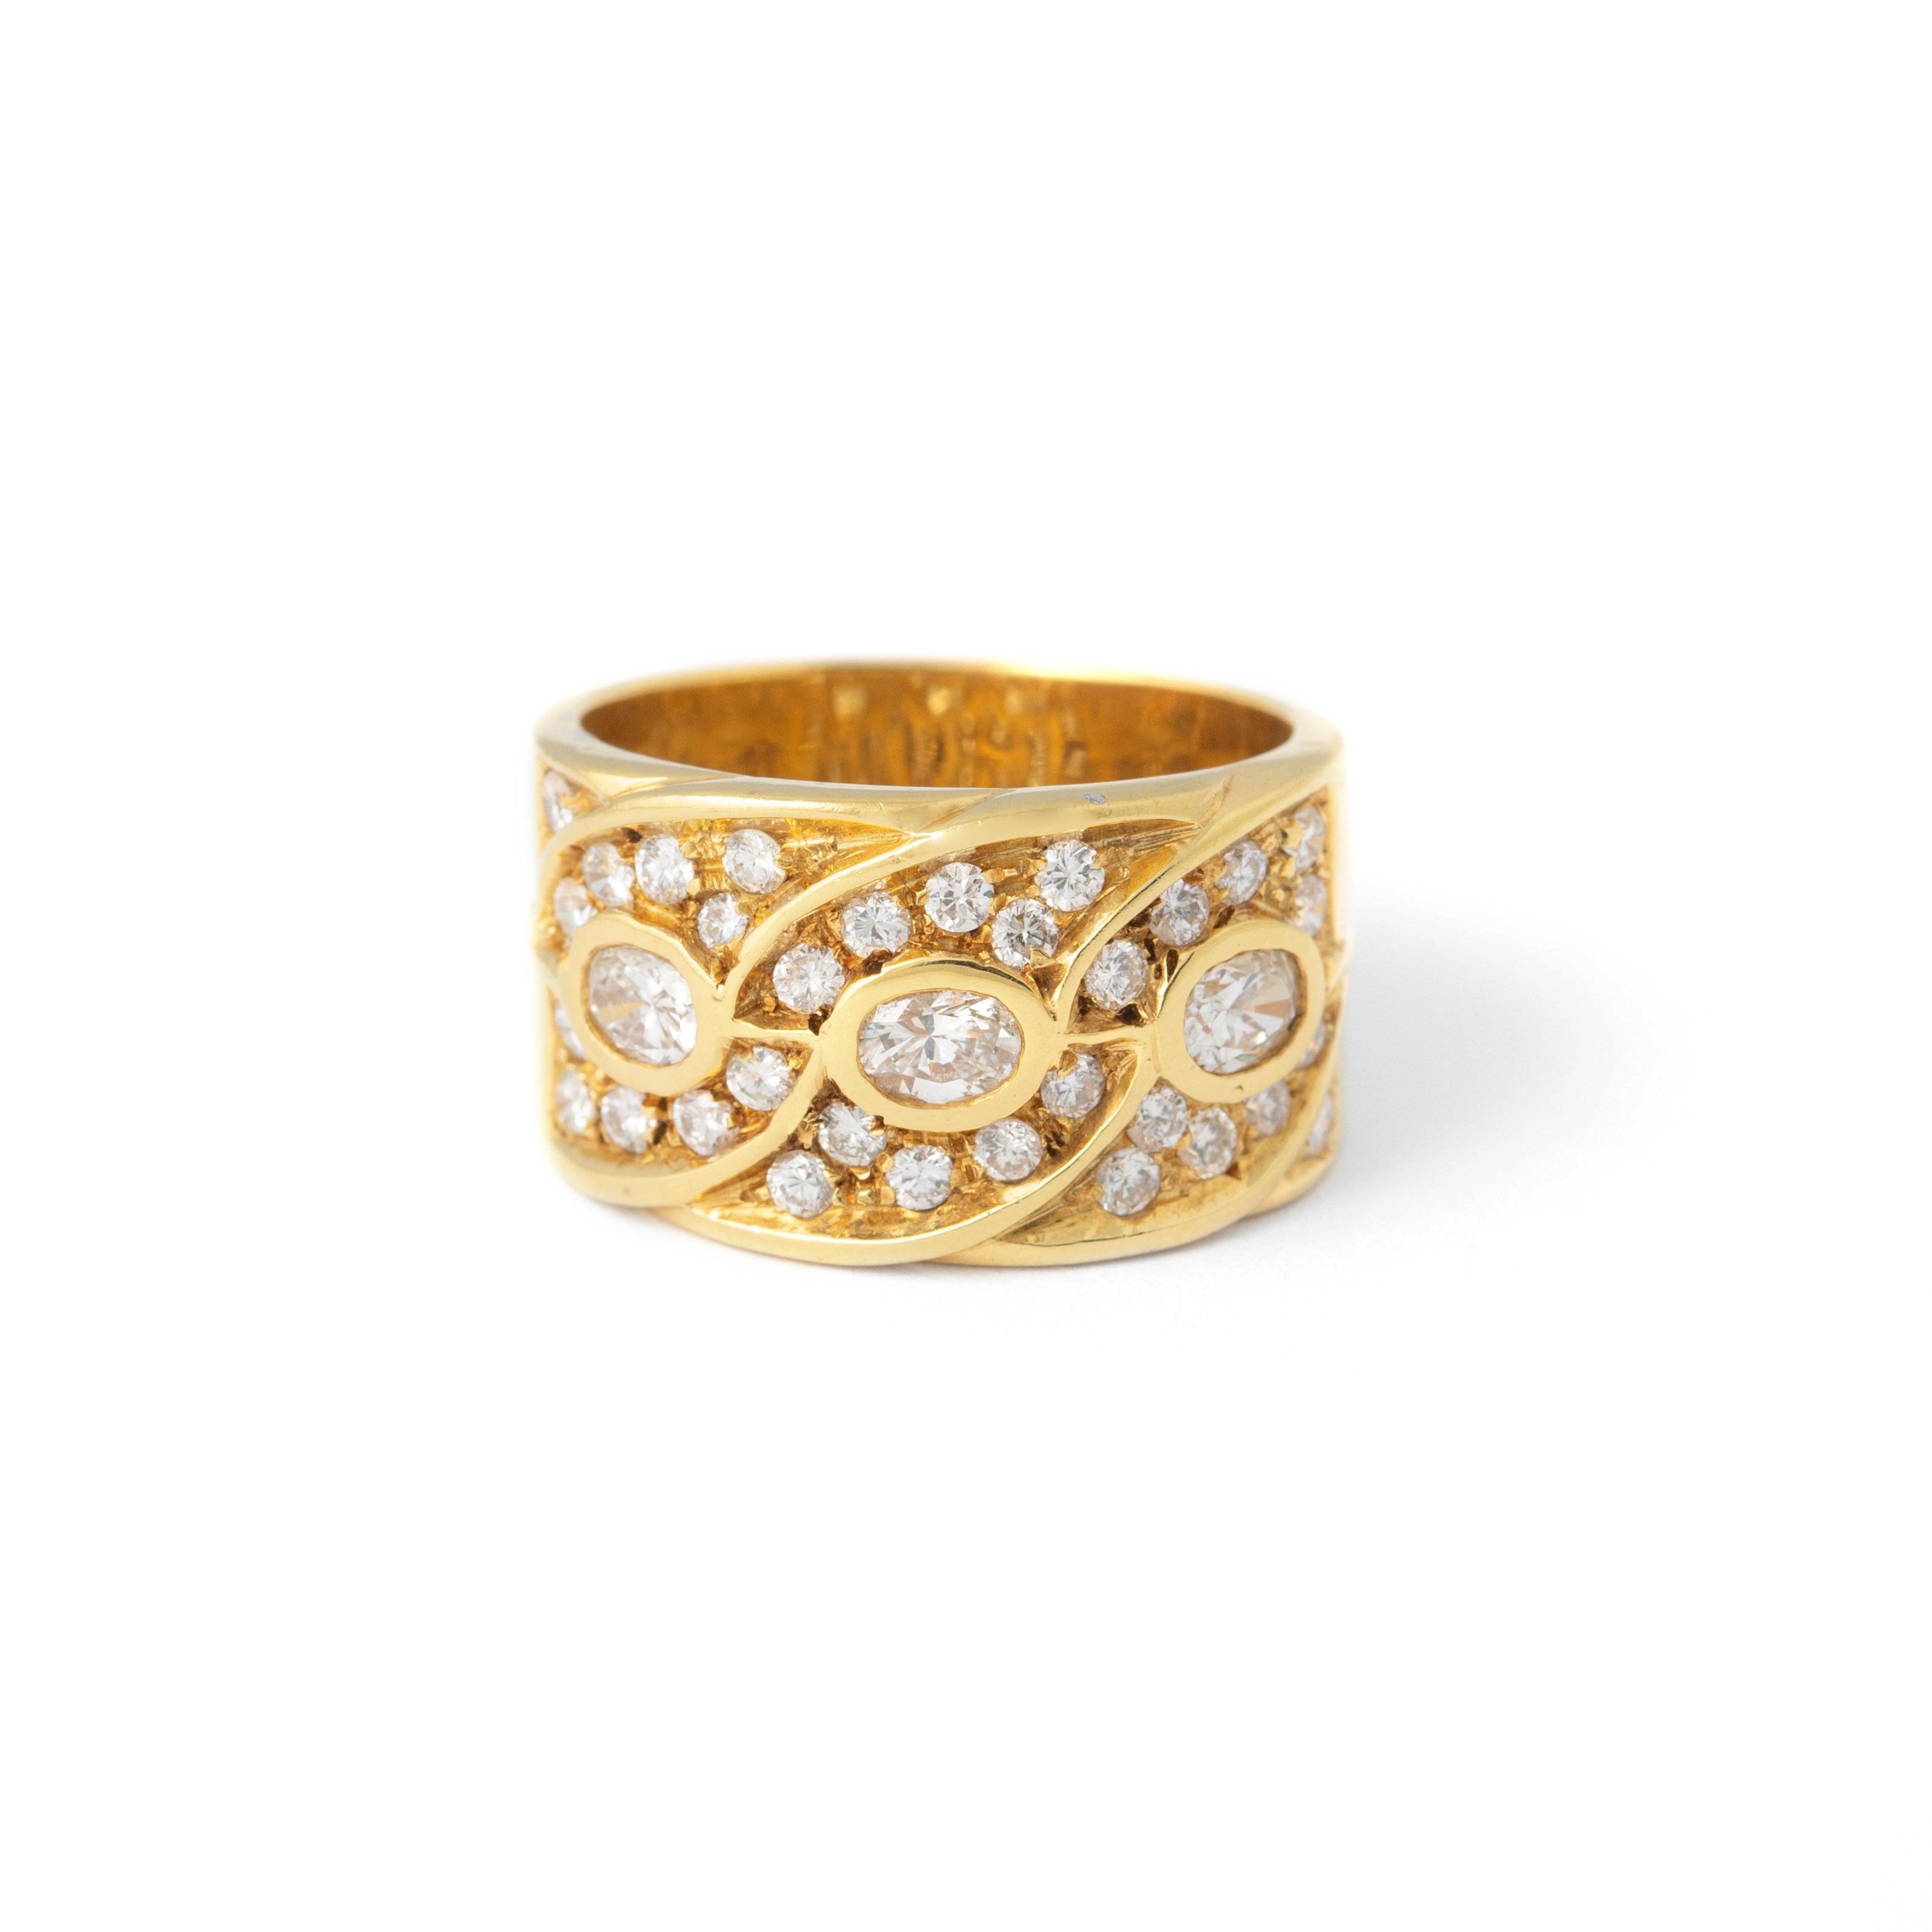 La bague en or jaune 18 carats est un bijou exquis serti d'un total de 1,05 carats de diamants éblouissants.

Le bracelet en or jaune 18 carats rehausse l'élégance de la bague, créant un accessoire luxueux et intemporel qui allie sans effort